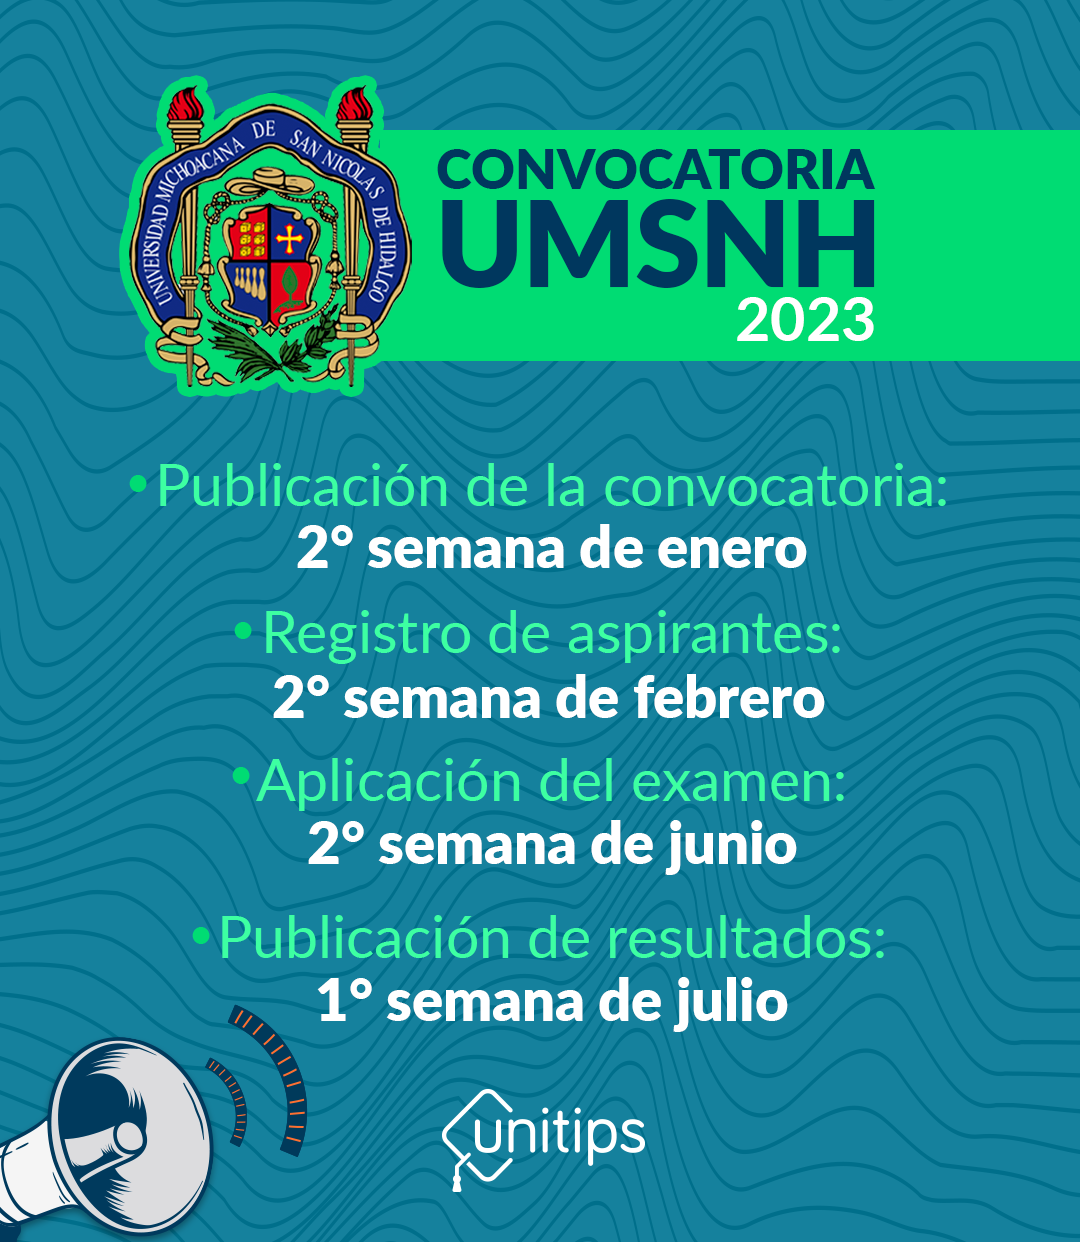 Convocatoria UMSNH 2023